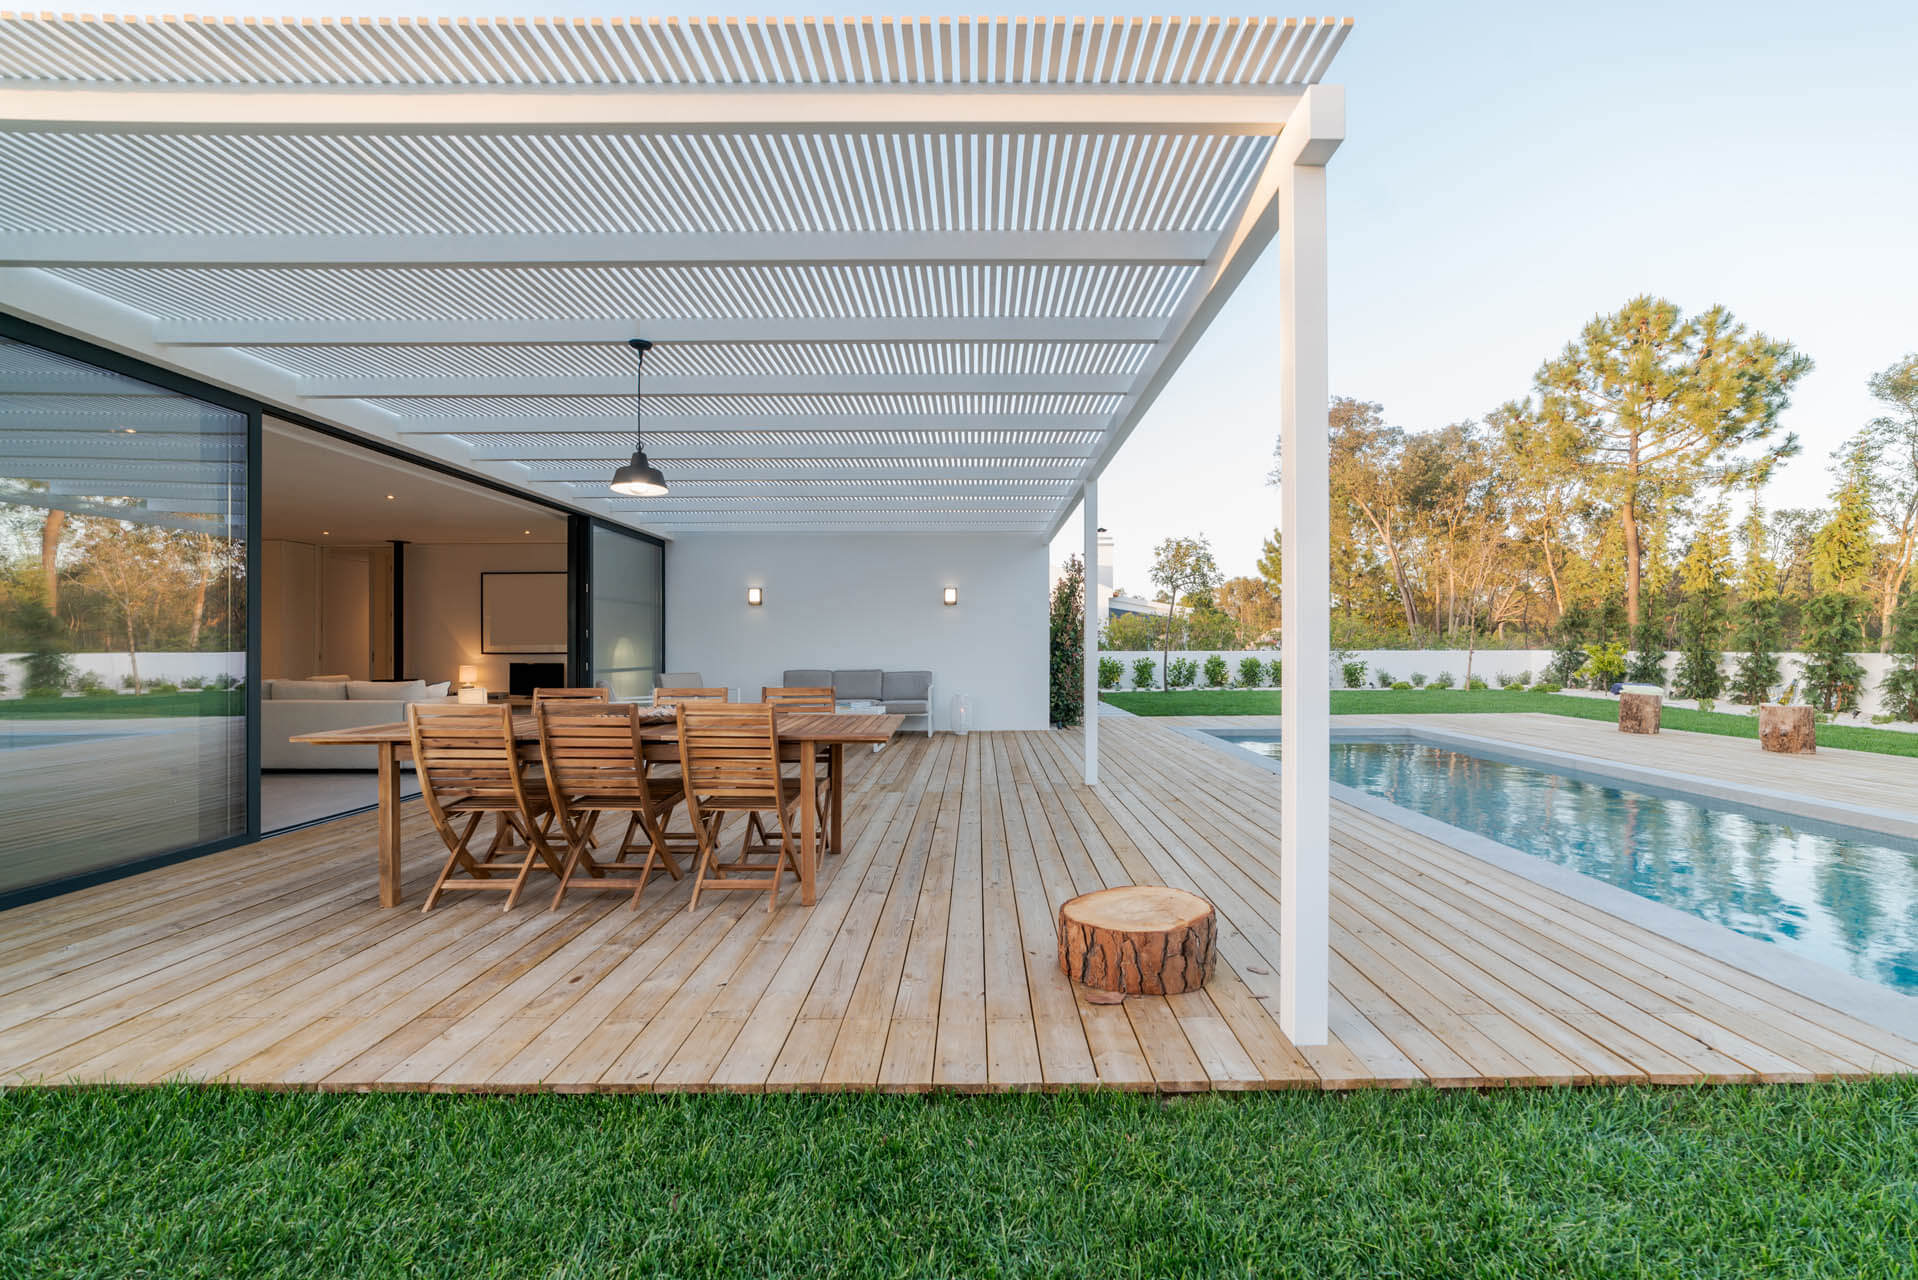 Luxuriöses Haus mit Terrassenüberdachung aus Holz mit Fußboden und Pool davor